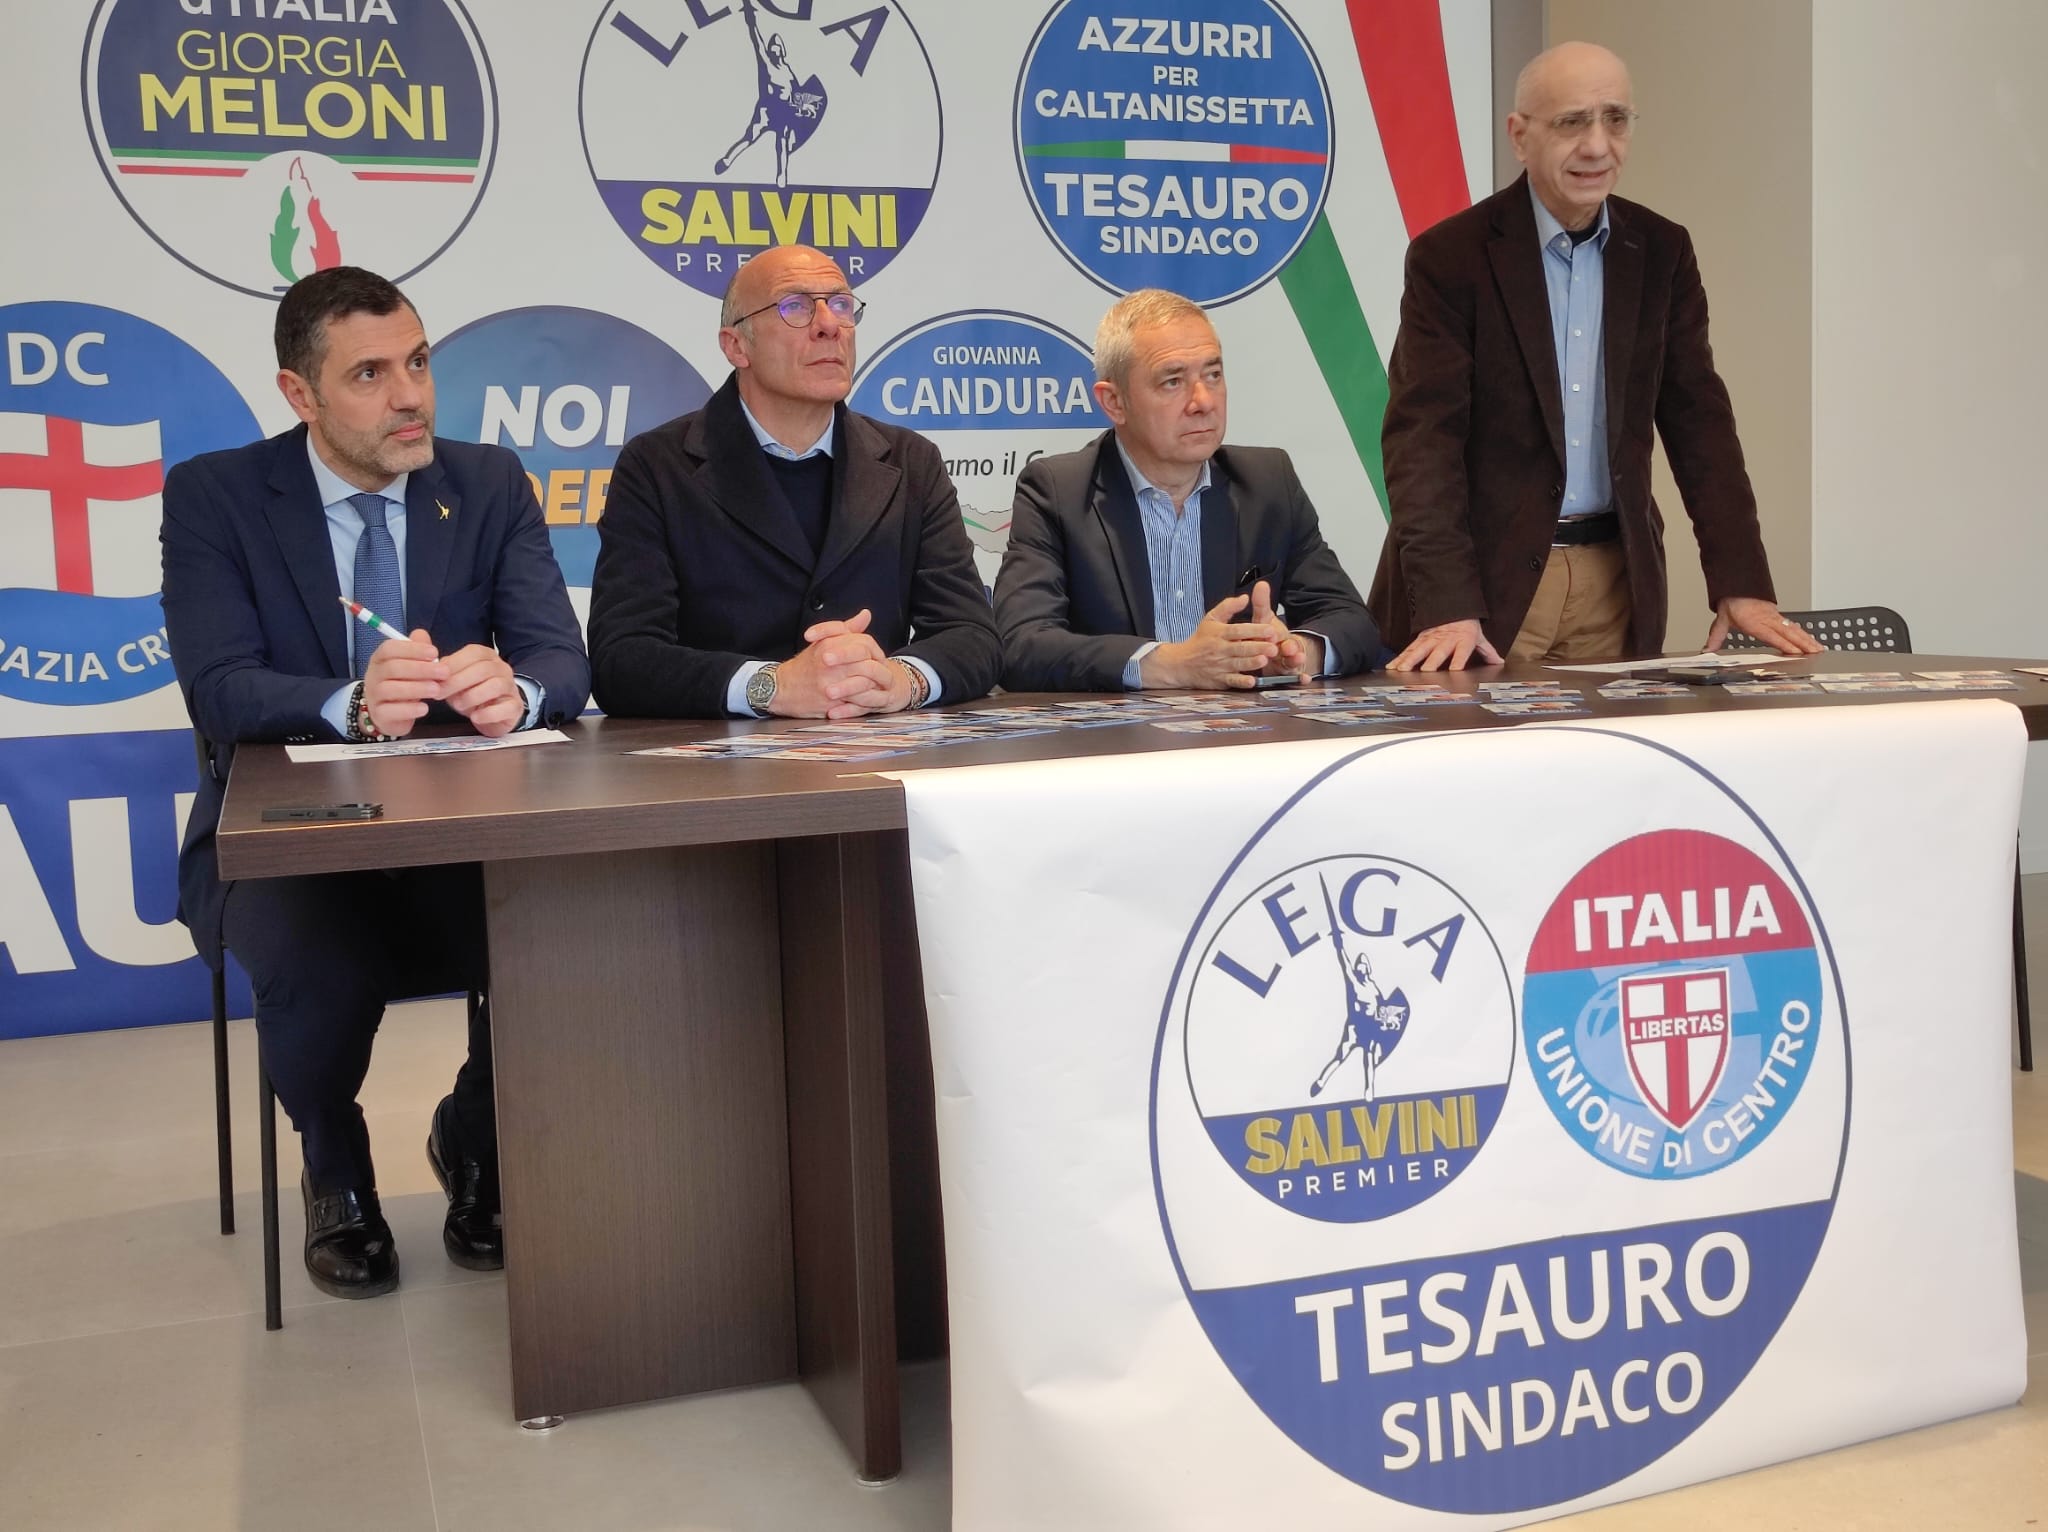 Caltanissetta, l’UdC lascia Failla e si affianca alla Lega a sostegno di Tesauro: “Disuniti si perde, uniti si vince”